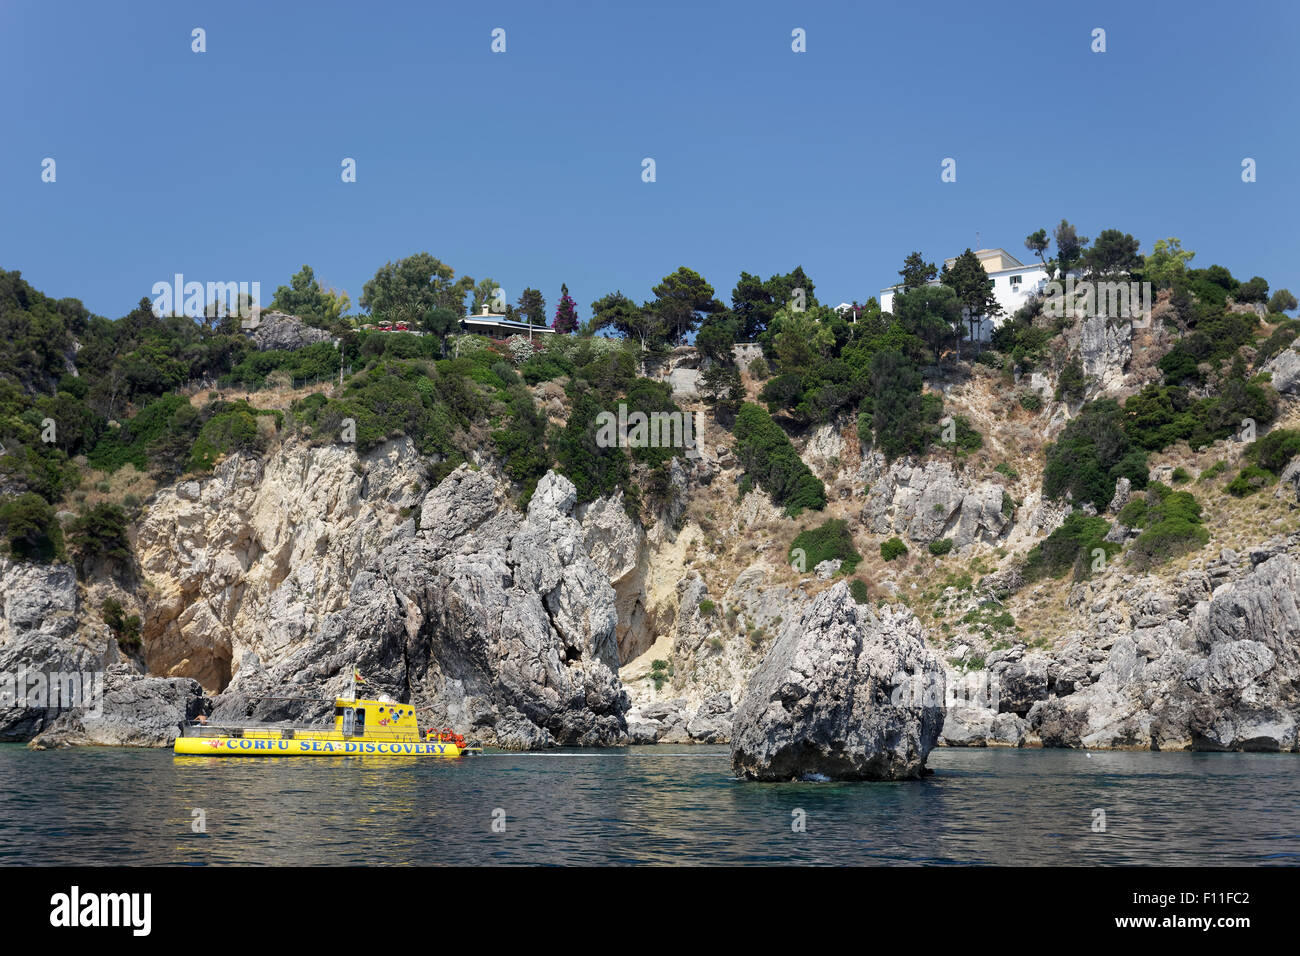 Falaises et un bateau à fond de verre, monastère de Panagia Theotokos tis Paleokastritsas ci-dessus, sur les roches, Paleokastrista, île de Corfou Banque D'Images